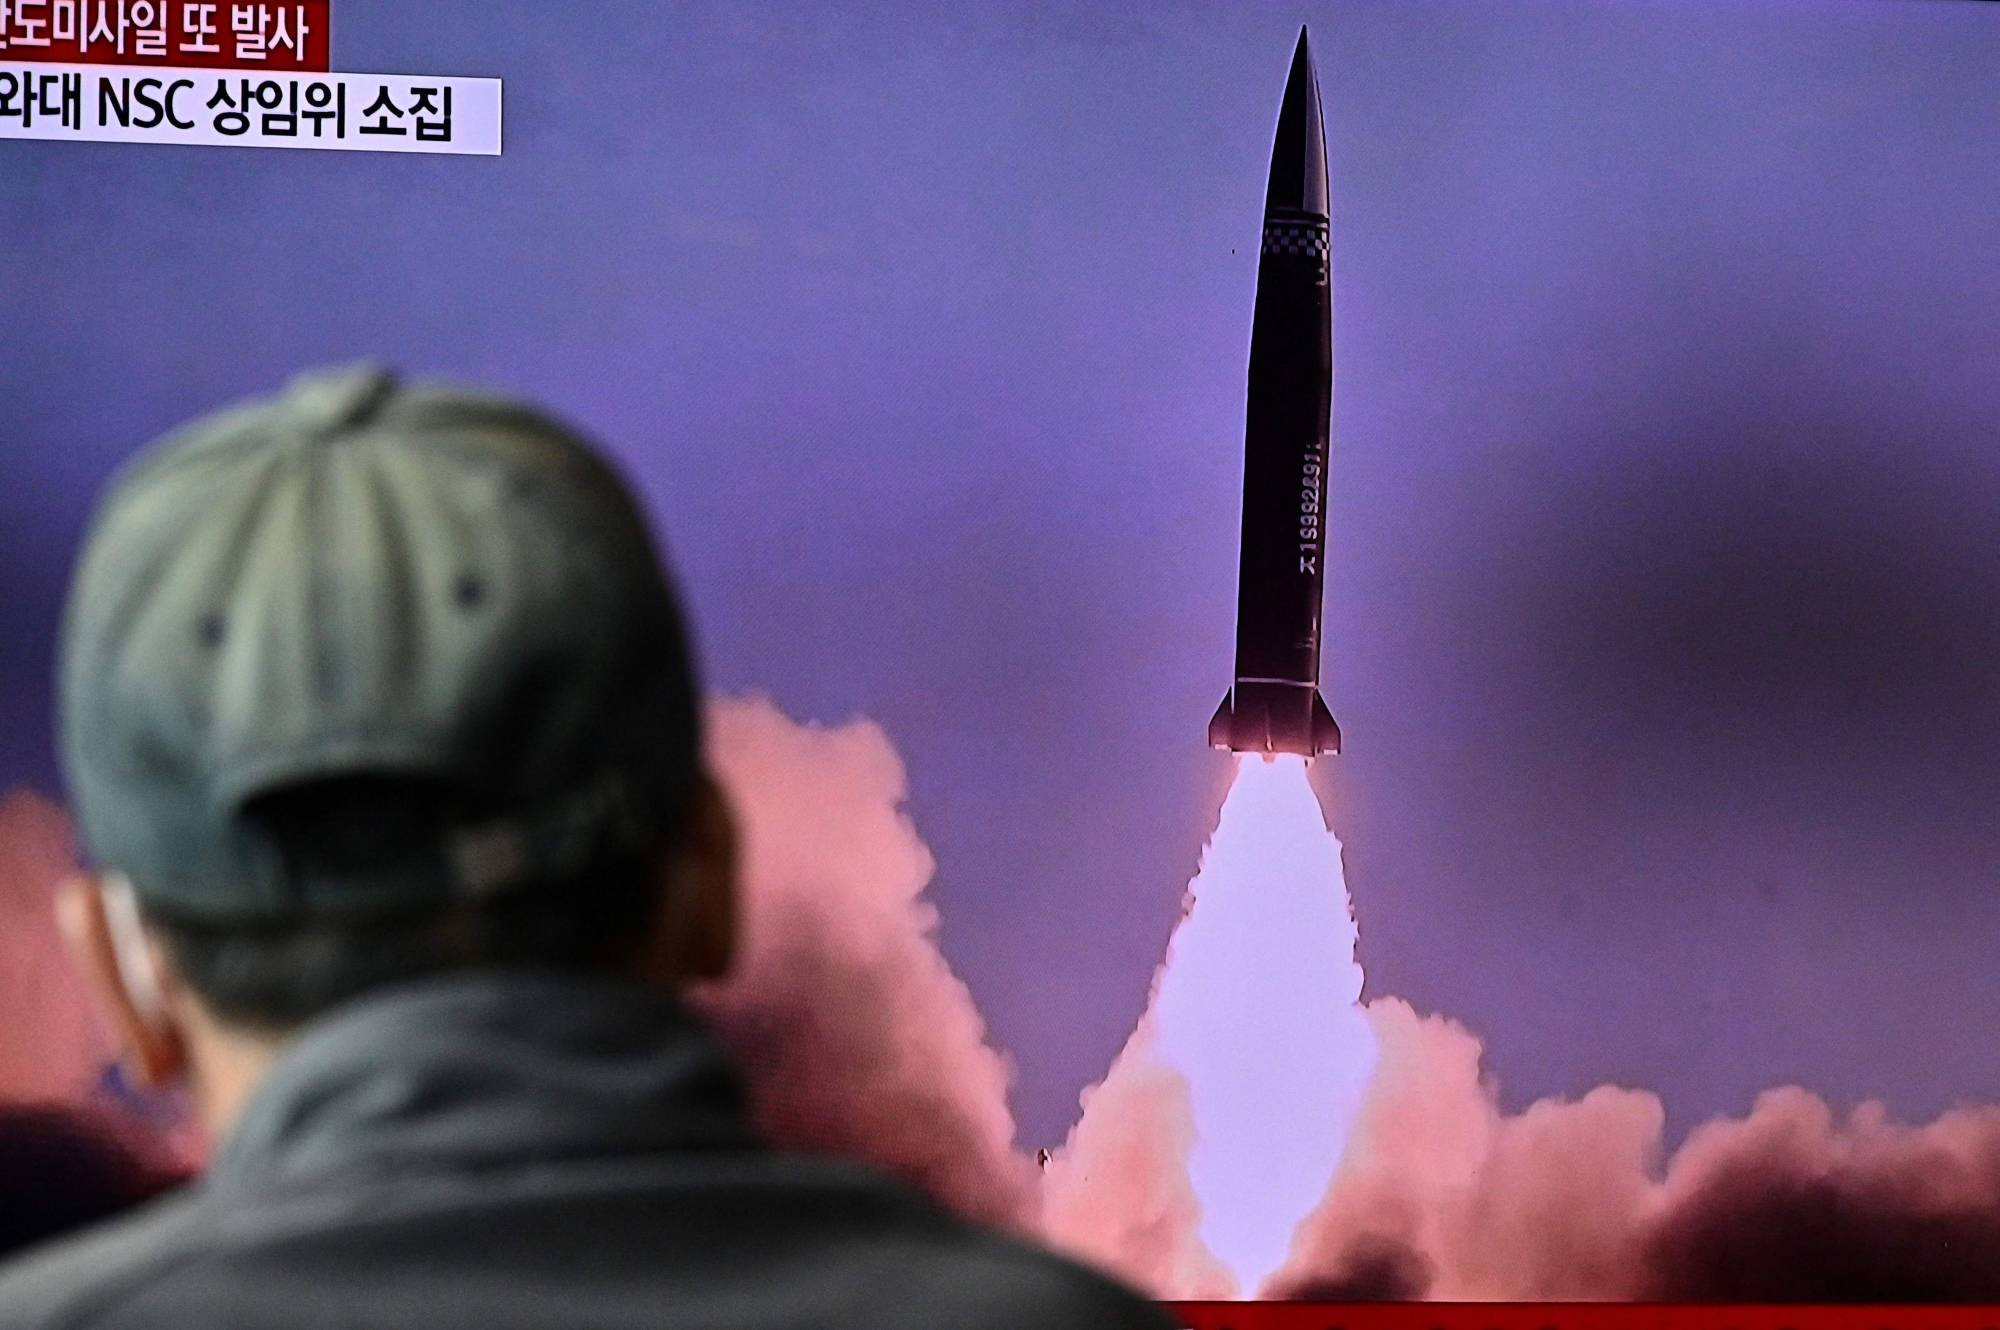 Chuyên gia đánh giá Triều Tiên che lấp thất bại kinh tế bằng các vụ phóng tên lửa. Ảnh: AP